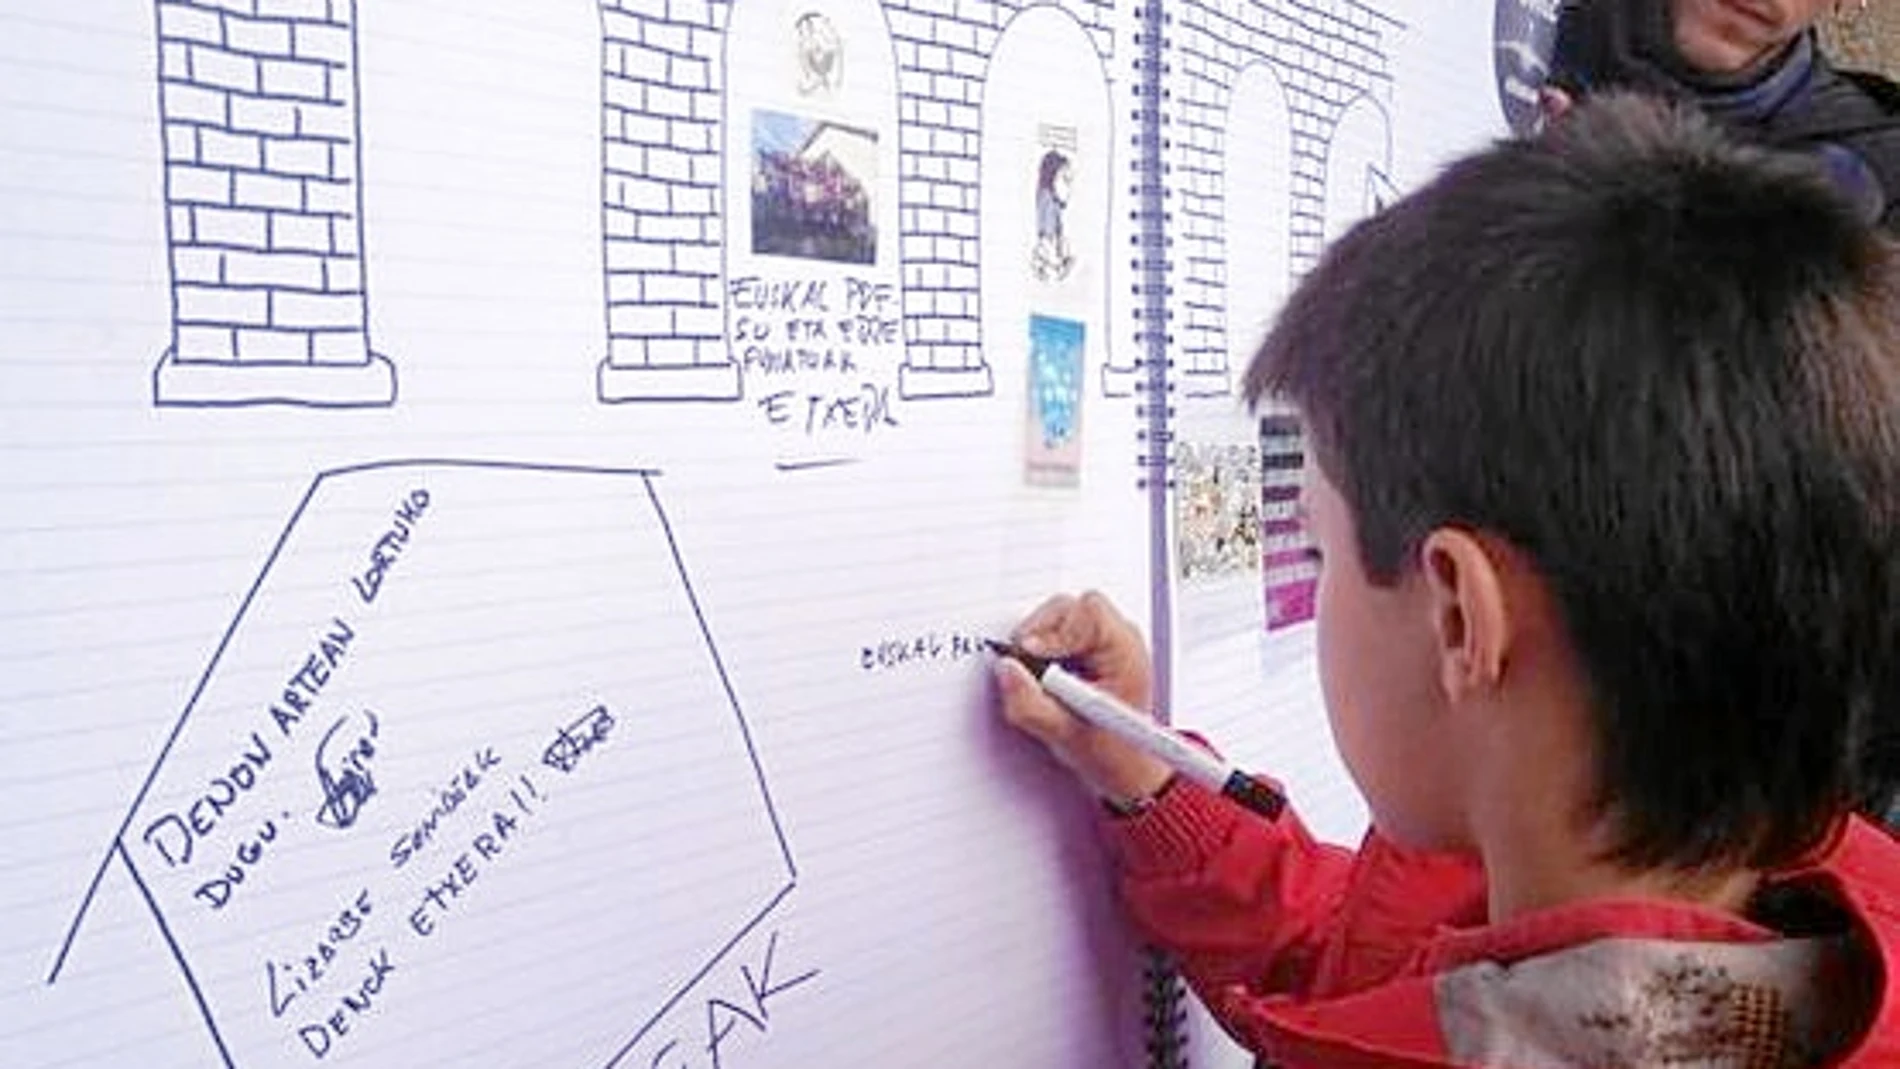 «EUSKAL PRESOAK ETXERA». Un niño de apenas 10 años escribe en el mural de homenaje a la etarra Inés del Río: «Presos vascos a casa»